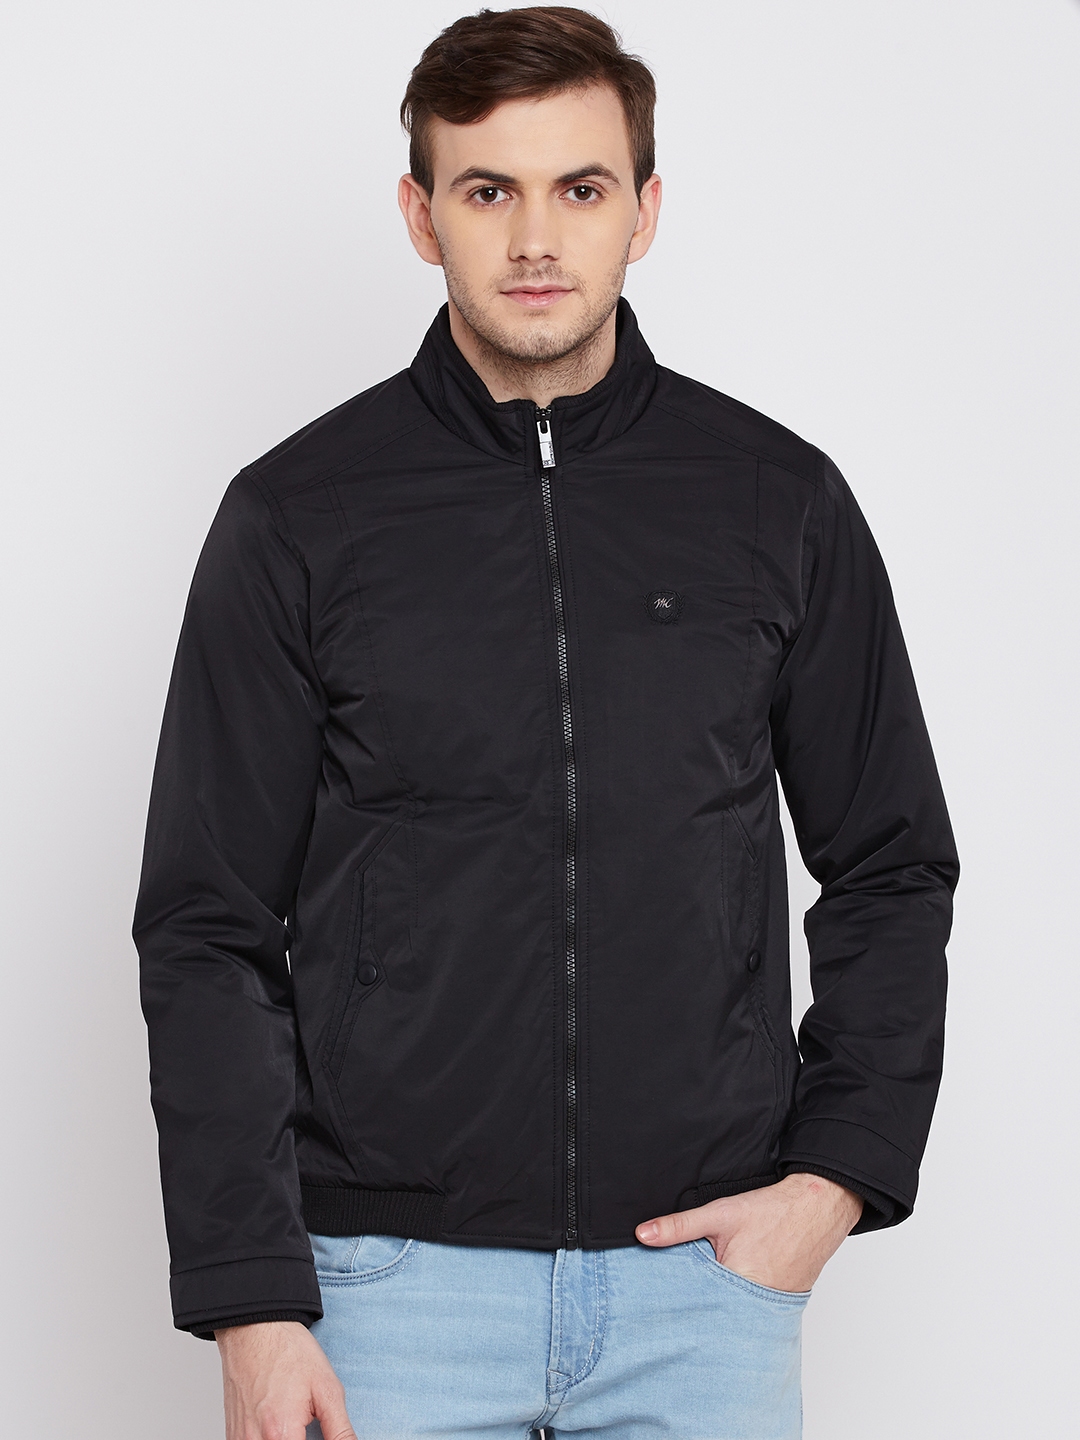 Buy Monte Carlo Black Jacket - Jackets for Men 1582002 | Myntra